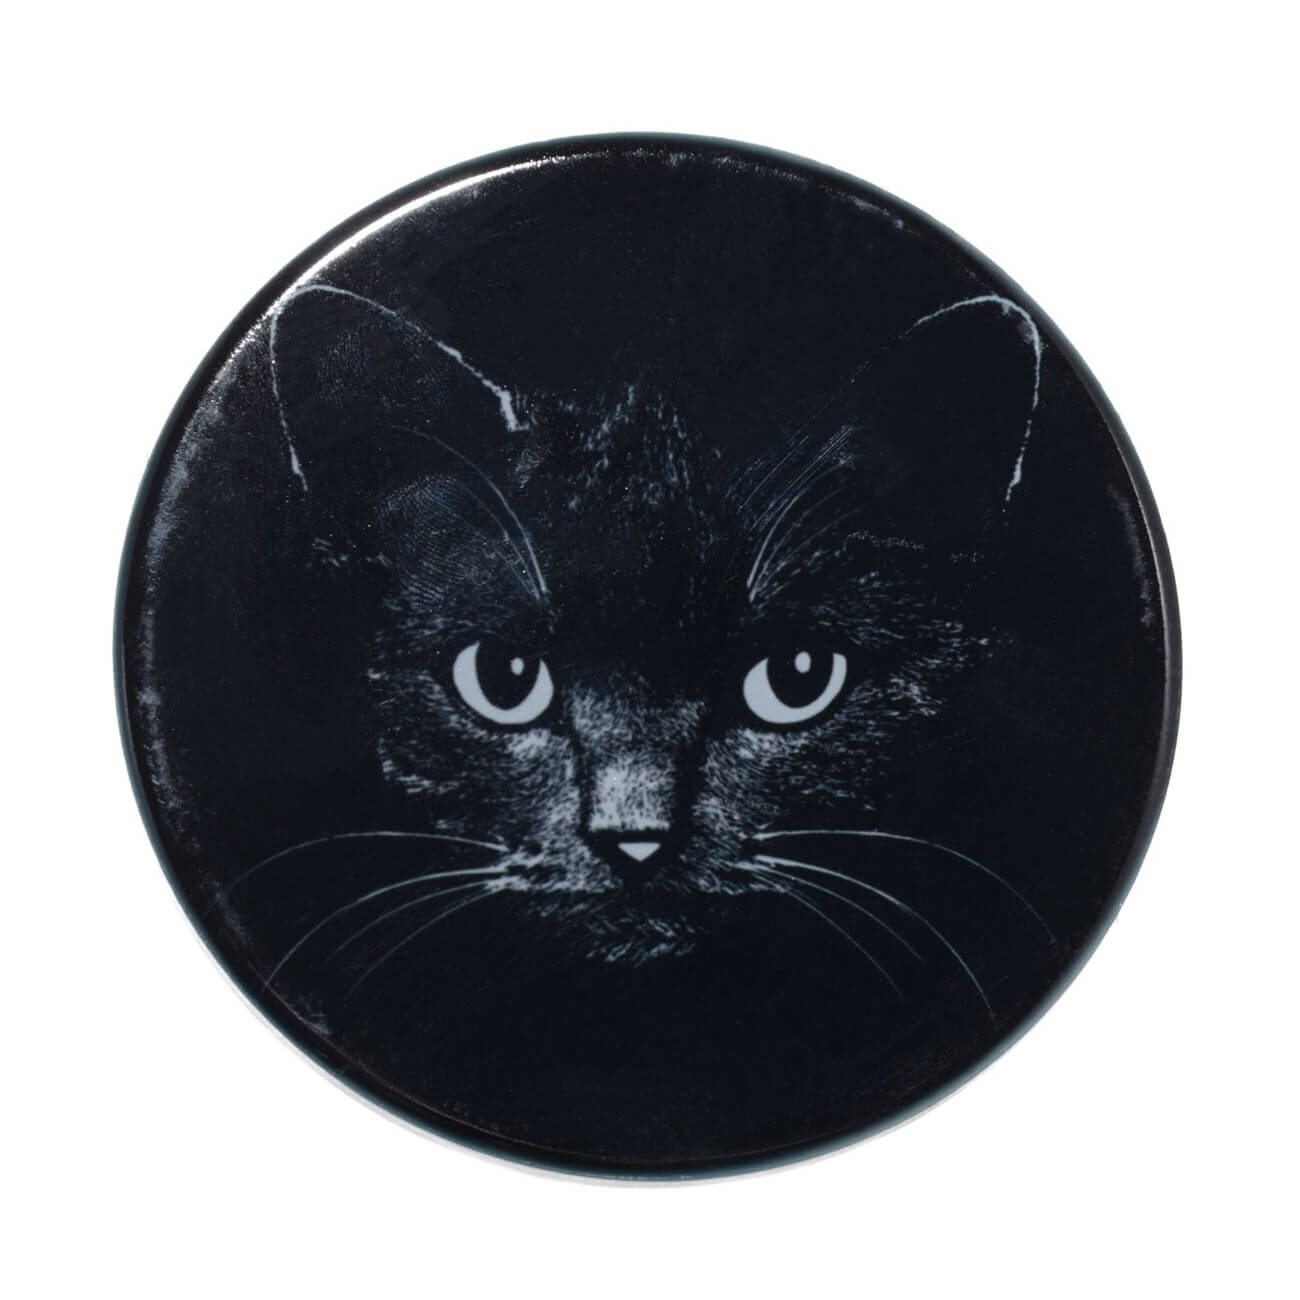 Подставка под кружку, 11x11 см, керамика/пробка, круглая, черная, Ночной кот, Cat night нетребко баренбойм в ночной тиши netrebko barenboim in the still of night 1 cd